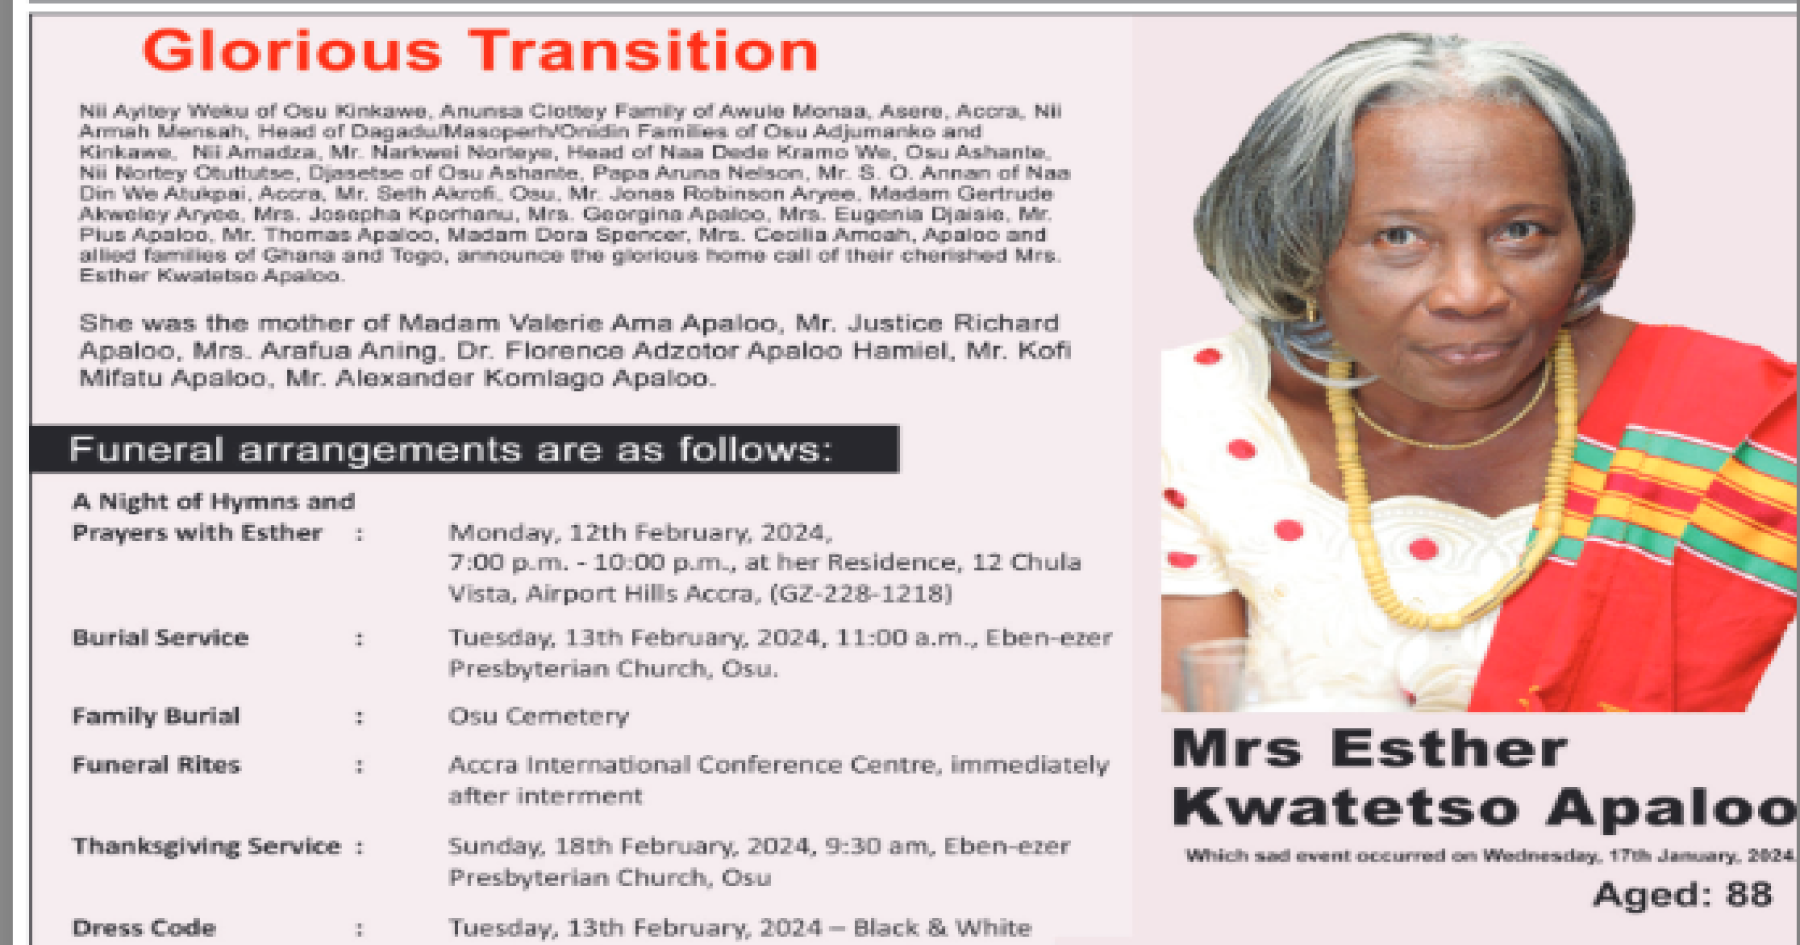 Mrs. Esther Kwatetso Apaloo